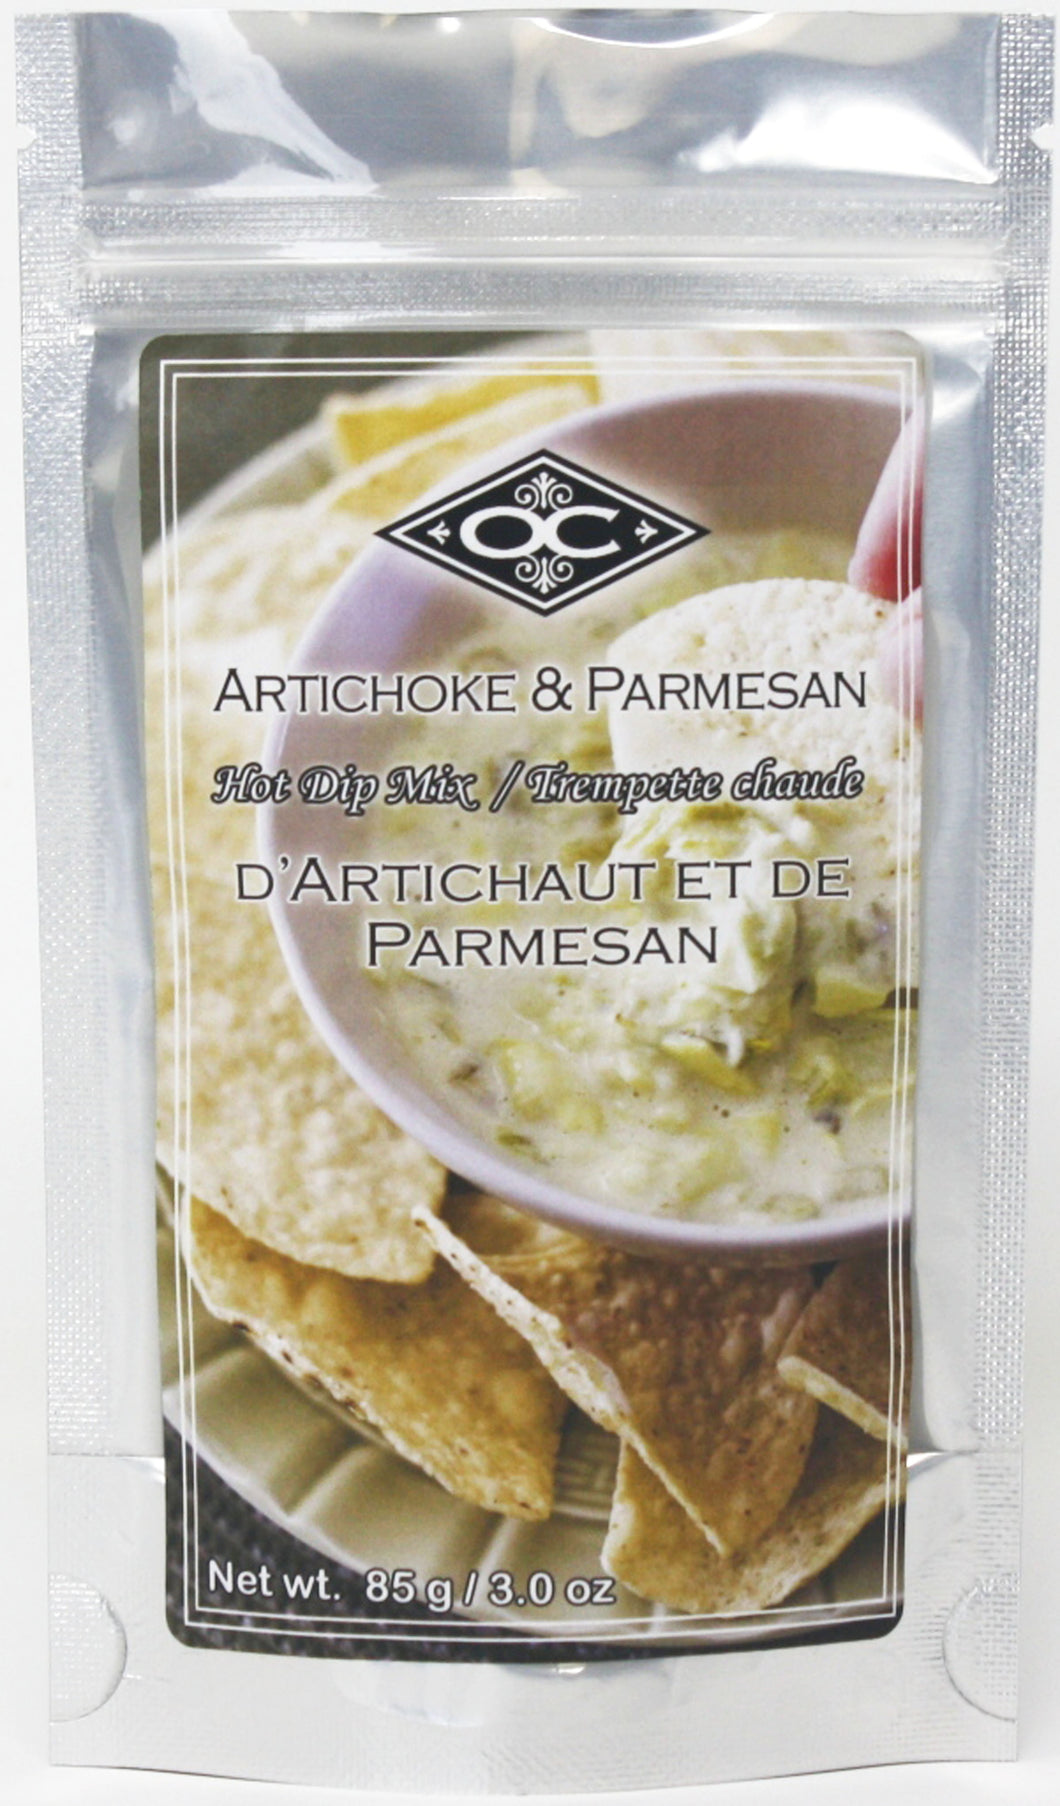 Artichoke and Parmesan - Hot Dip